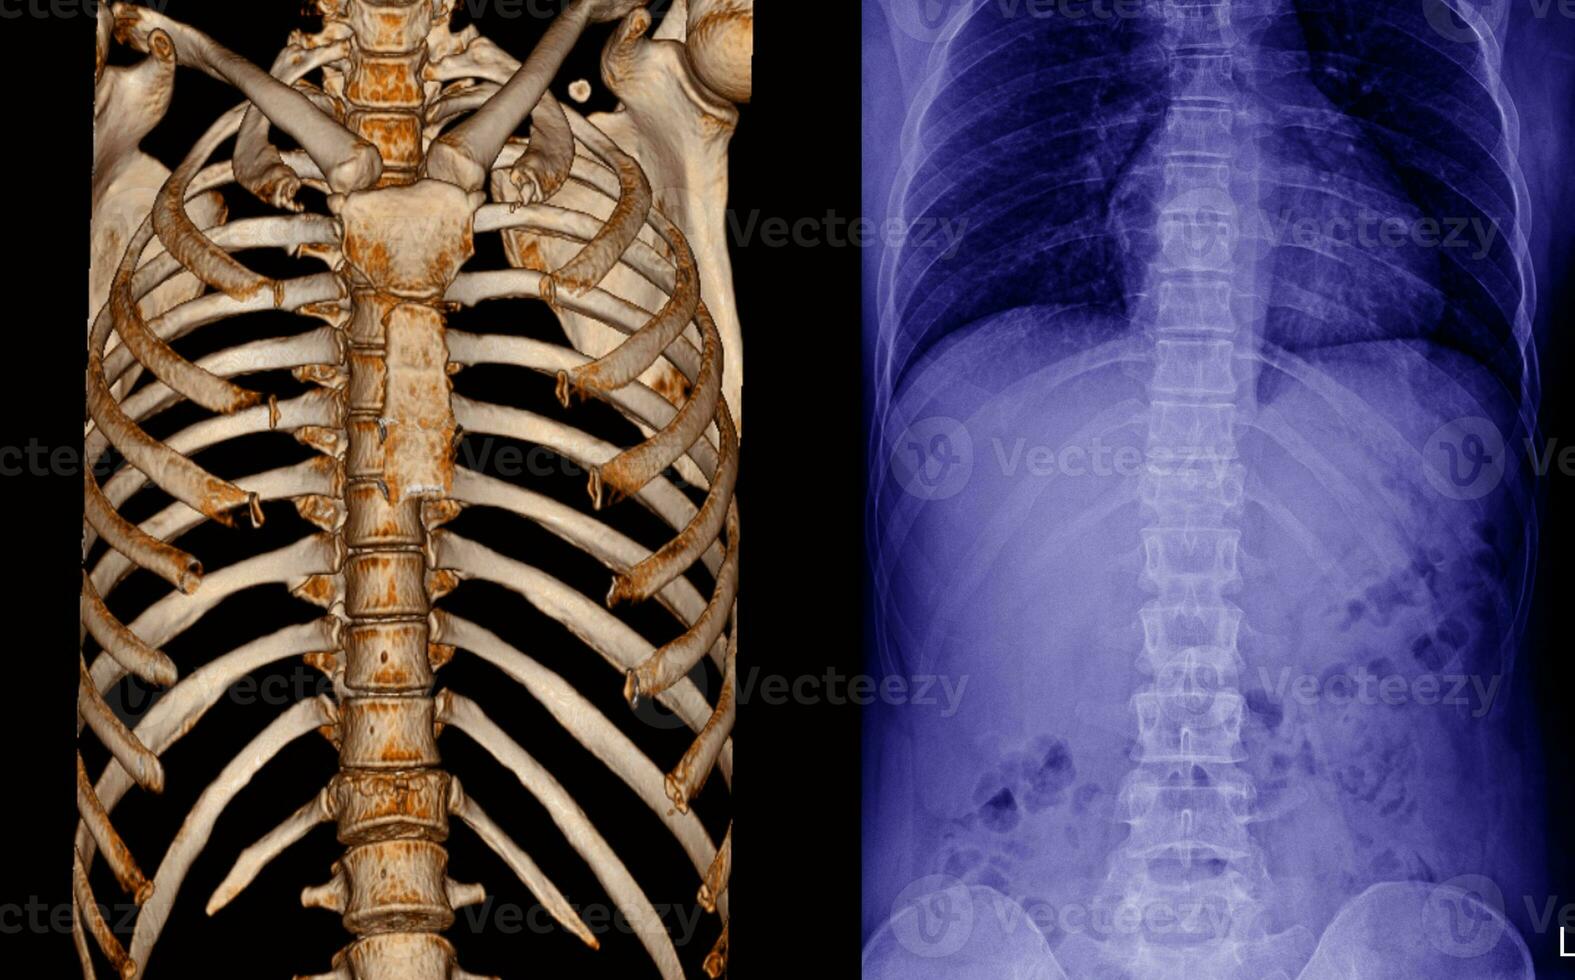 röntgenstraal en ct scannen thoracaal wervelkolom foto